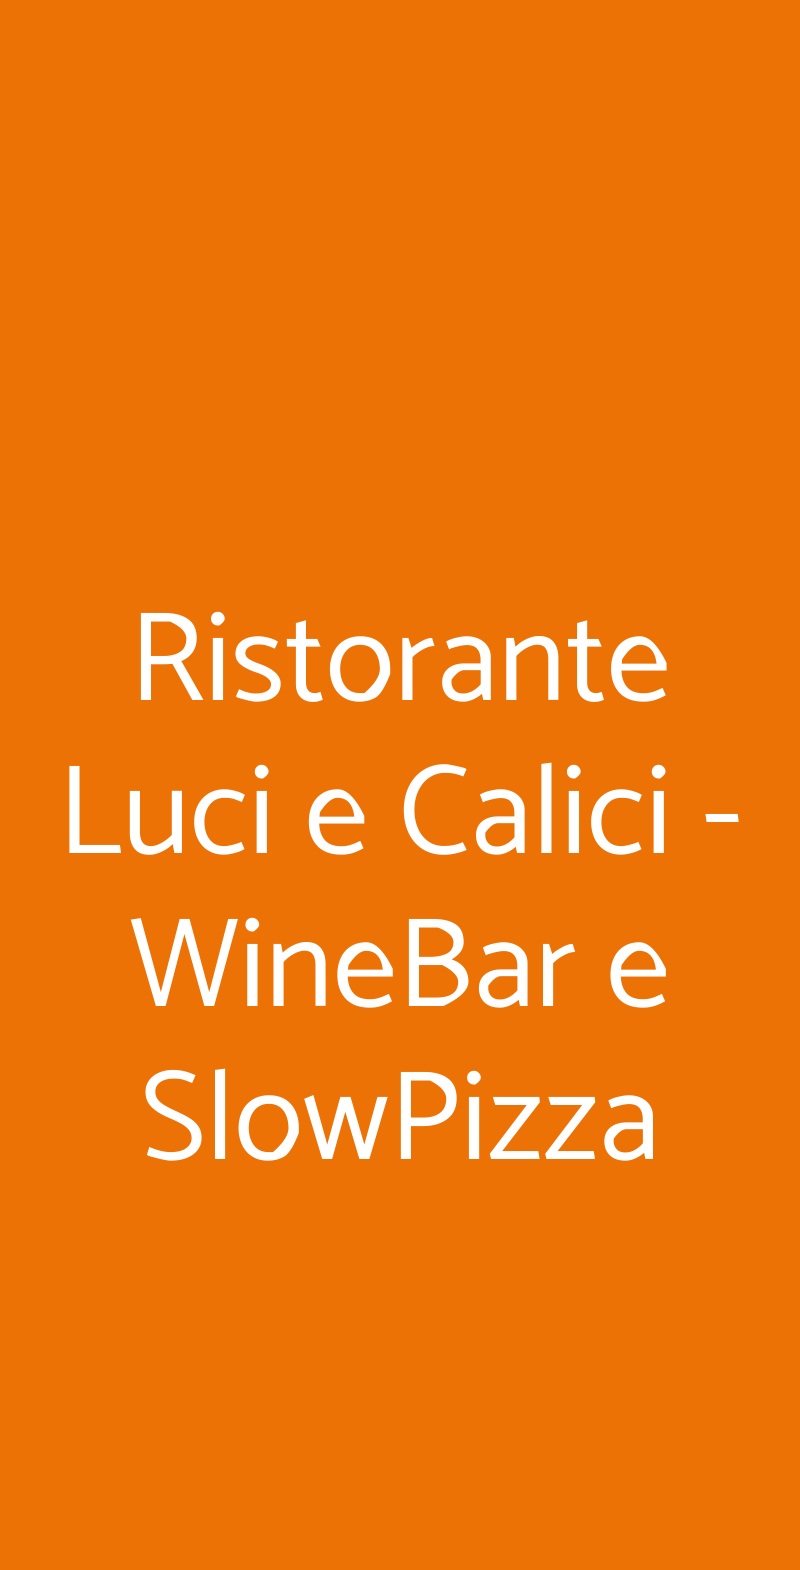 Ristorante Luci e Calici - WineBar e SlowPizza Palermo menù 1 pagina